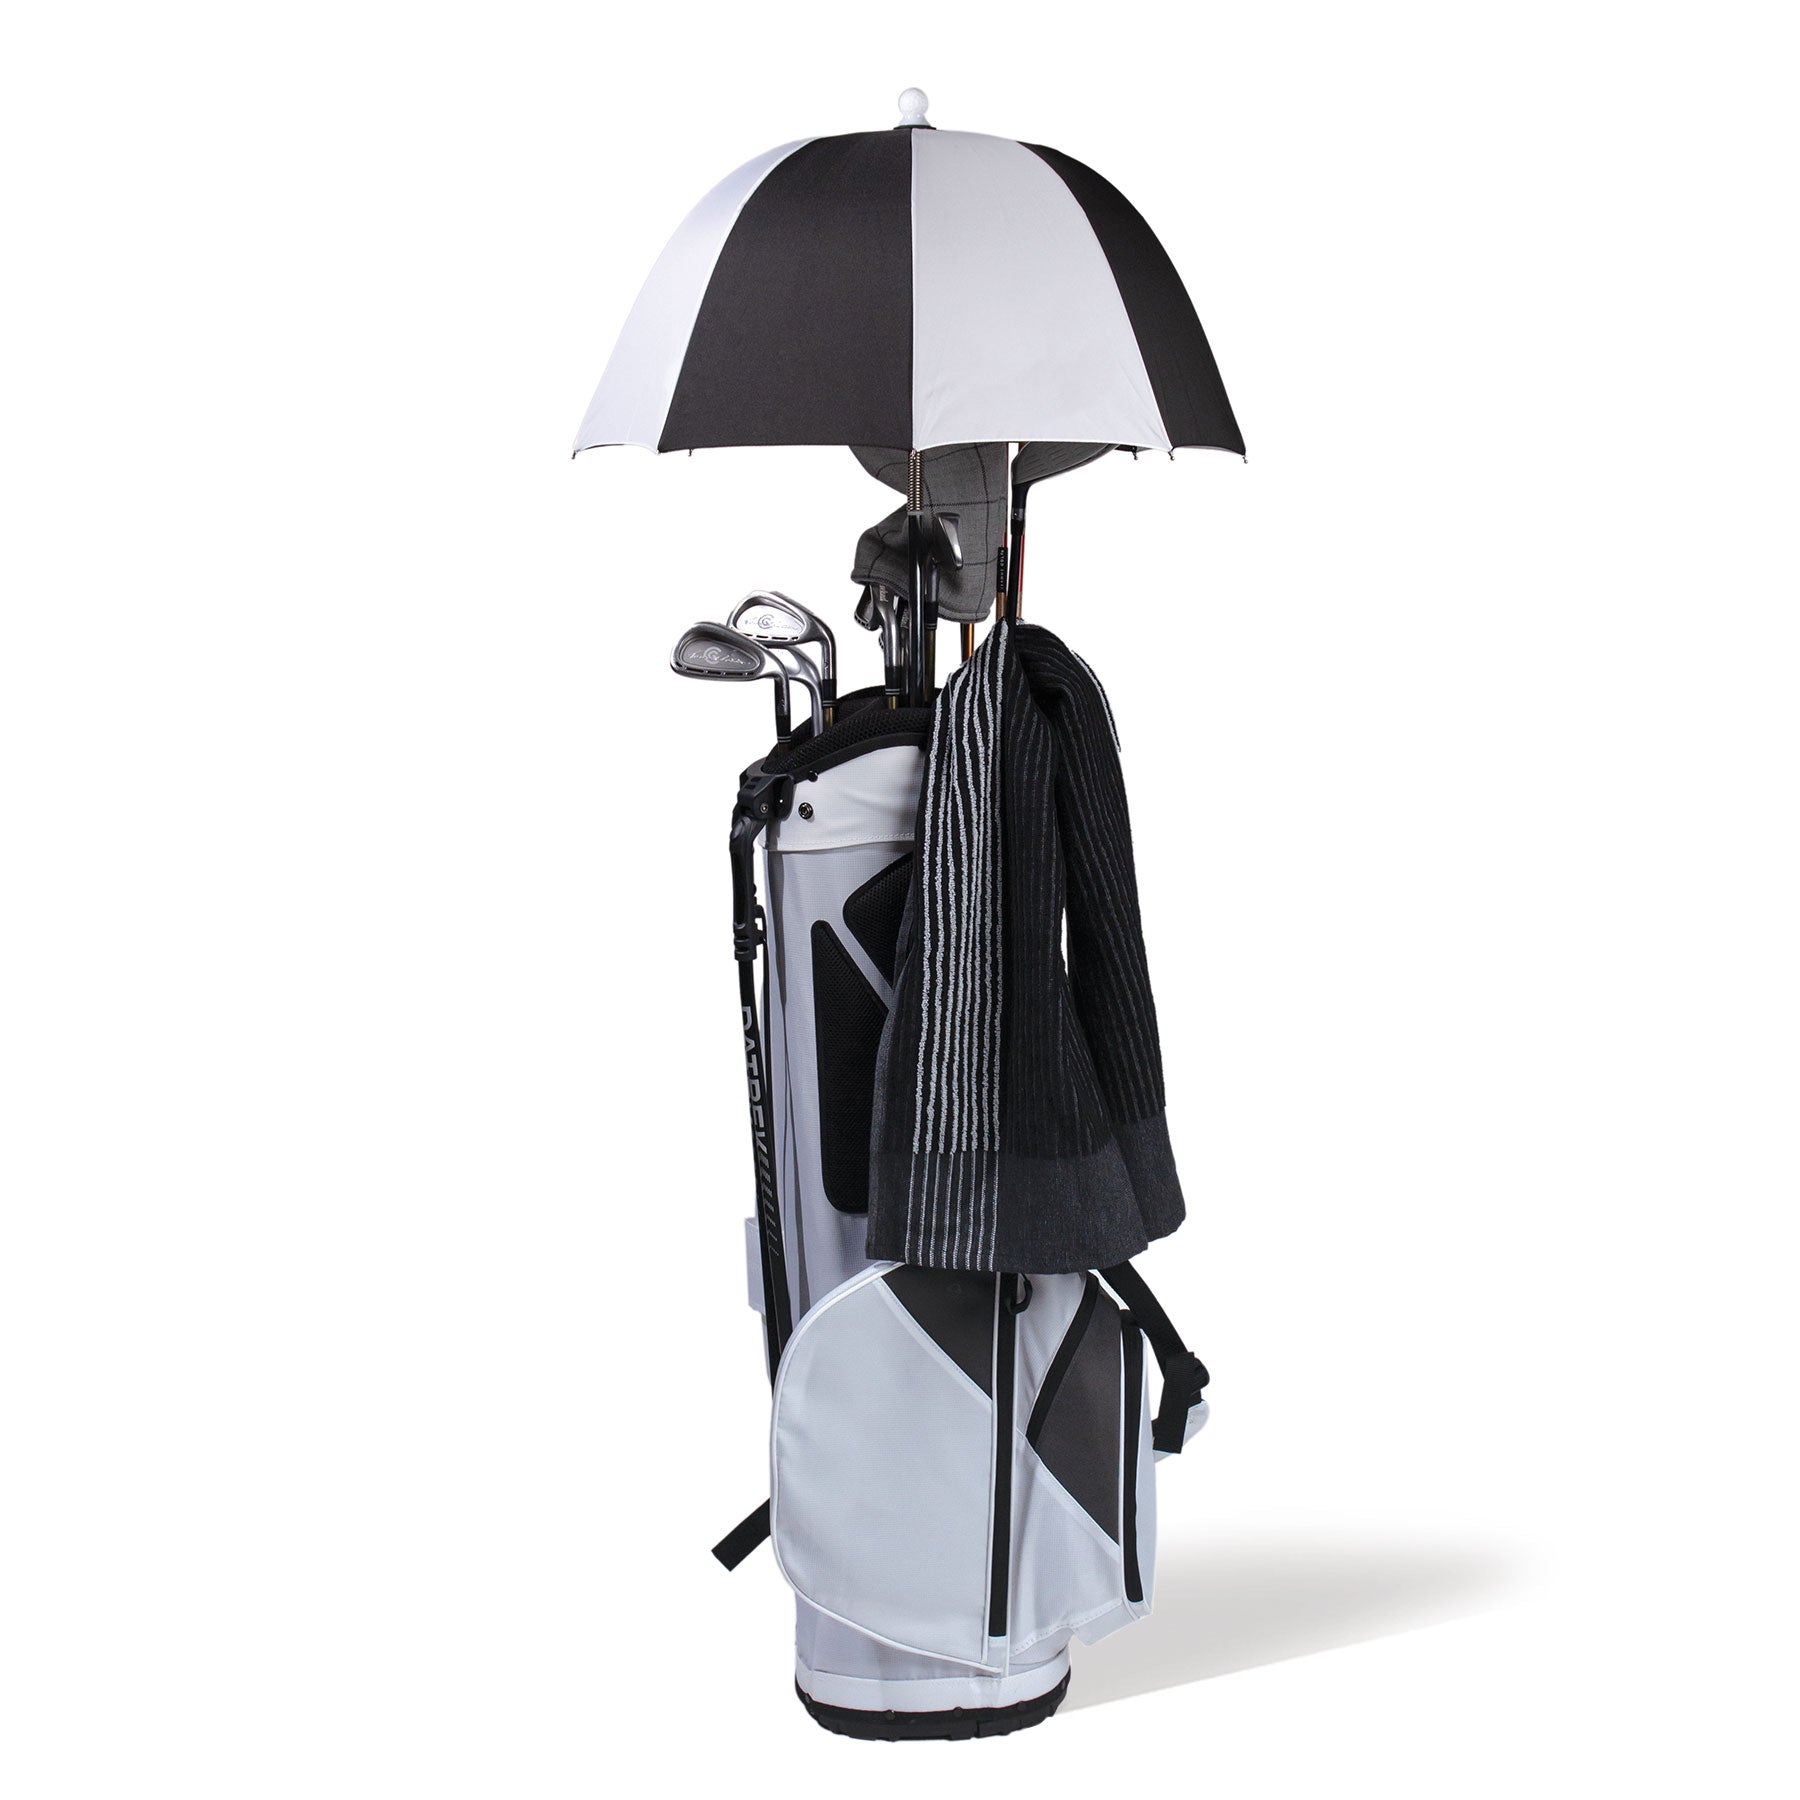 Club Canopy Umbrella